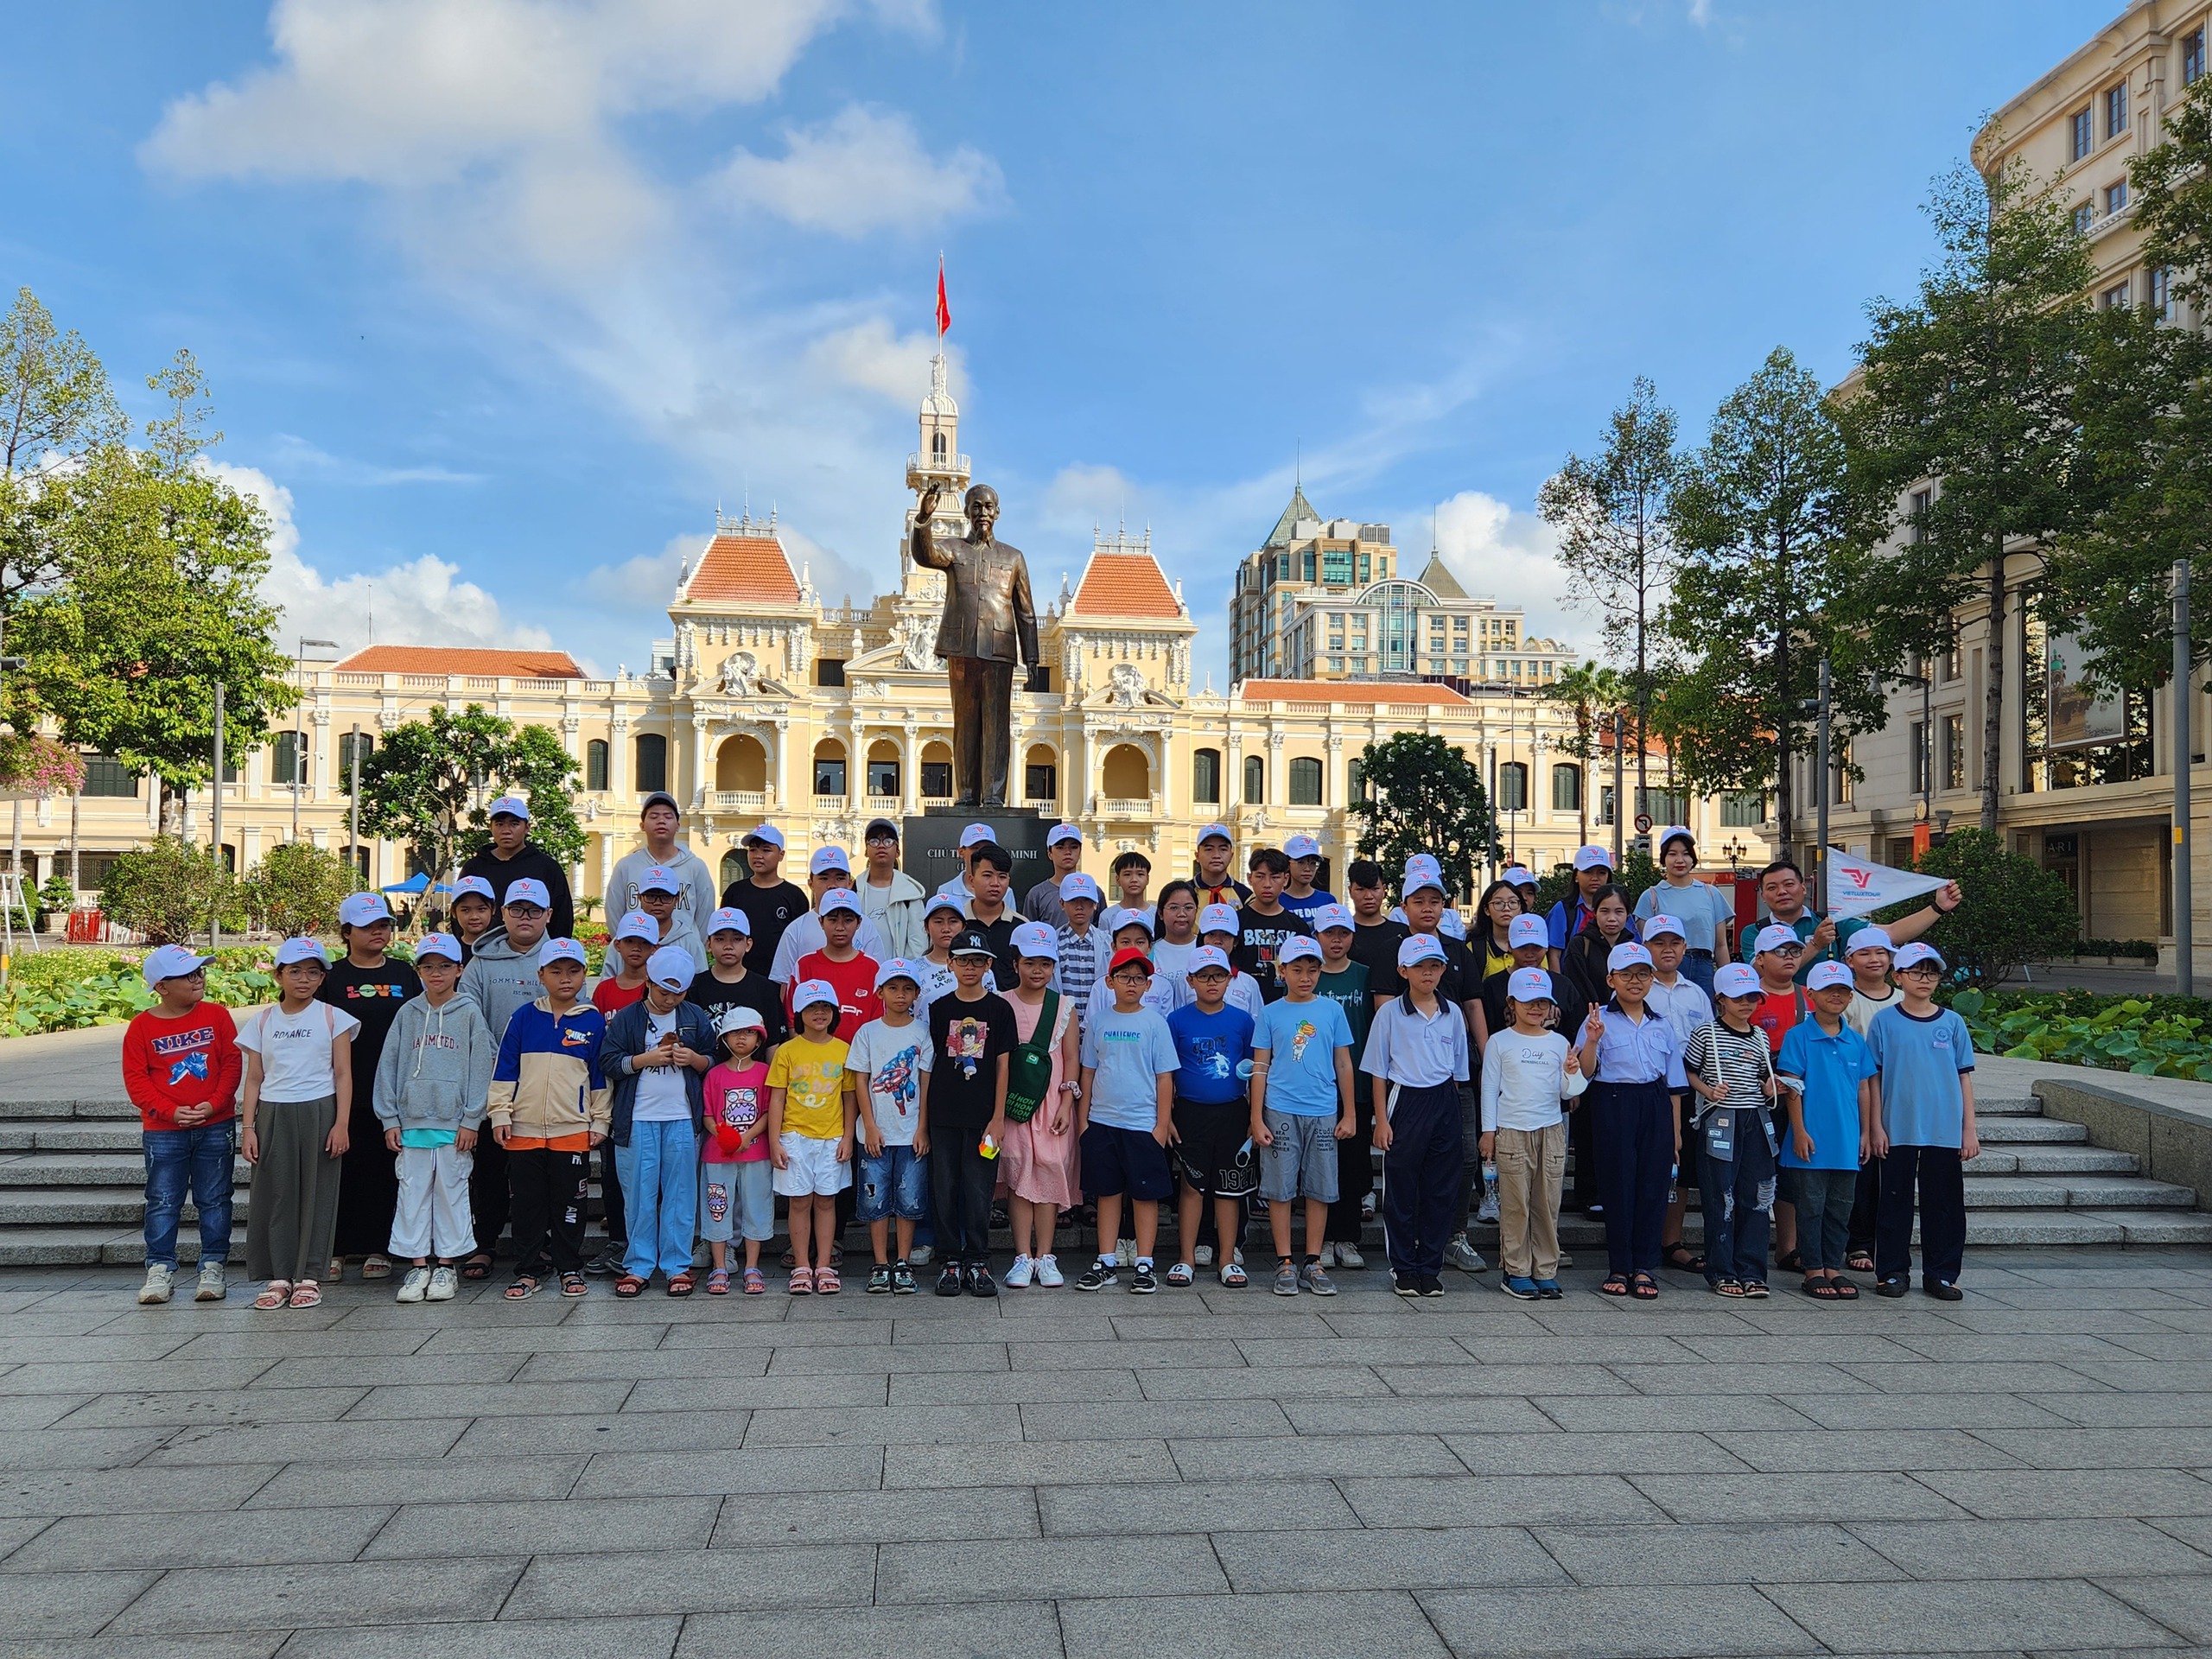 TP Hồ Chí Minh: Tour tham quan miễn phí cho trẻ có hoàn cảnh khó khăn được hưởng ứng nhiệt tình   - Ảnh 1.